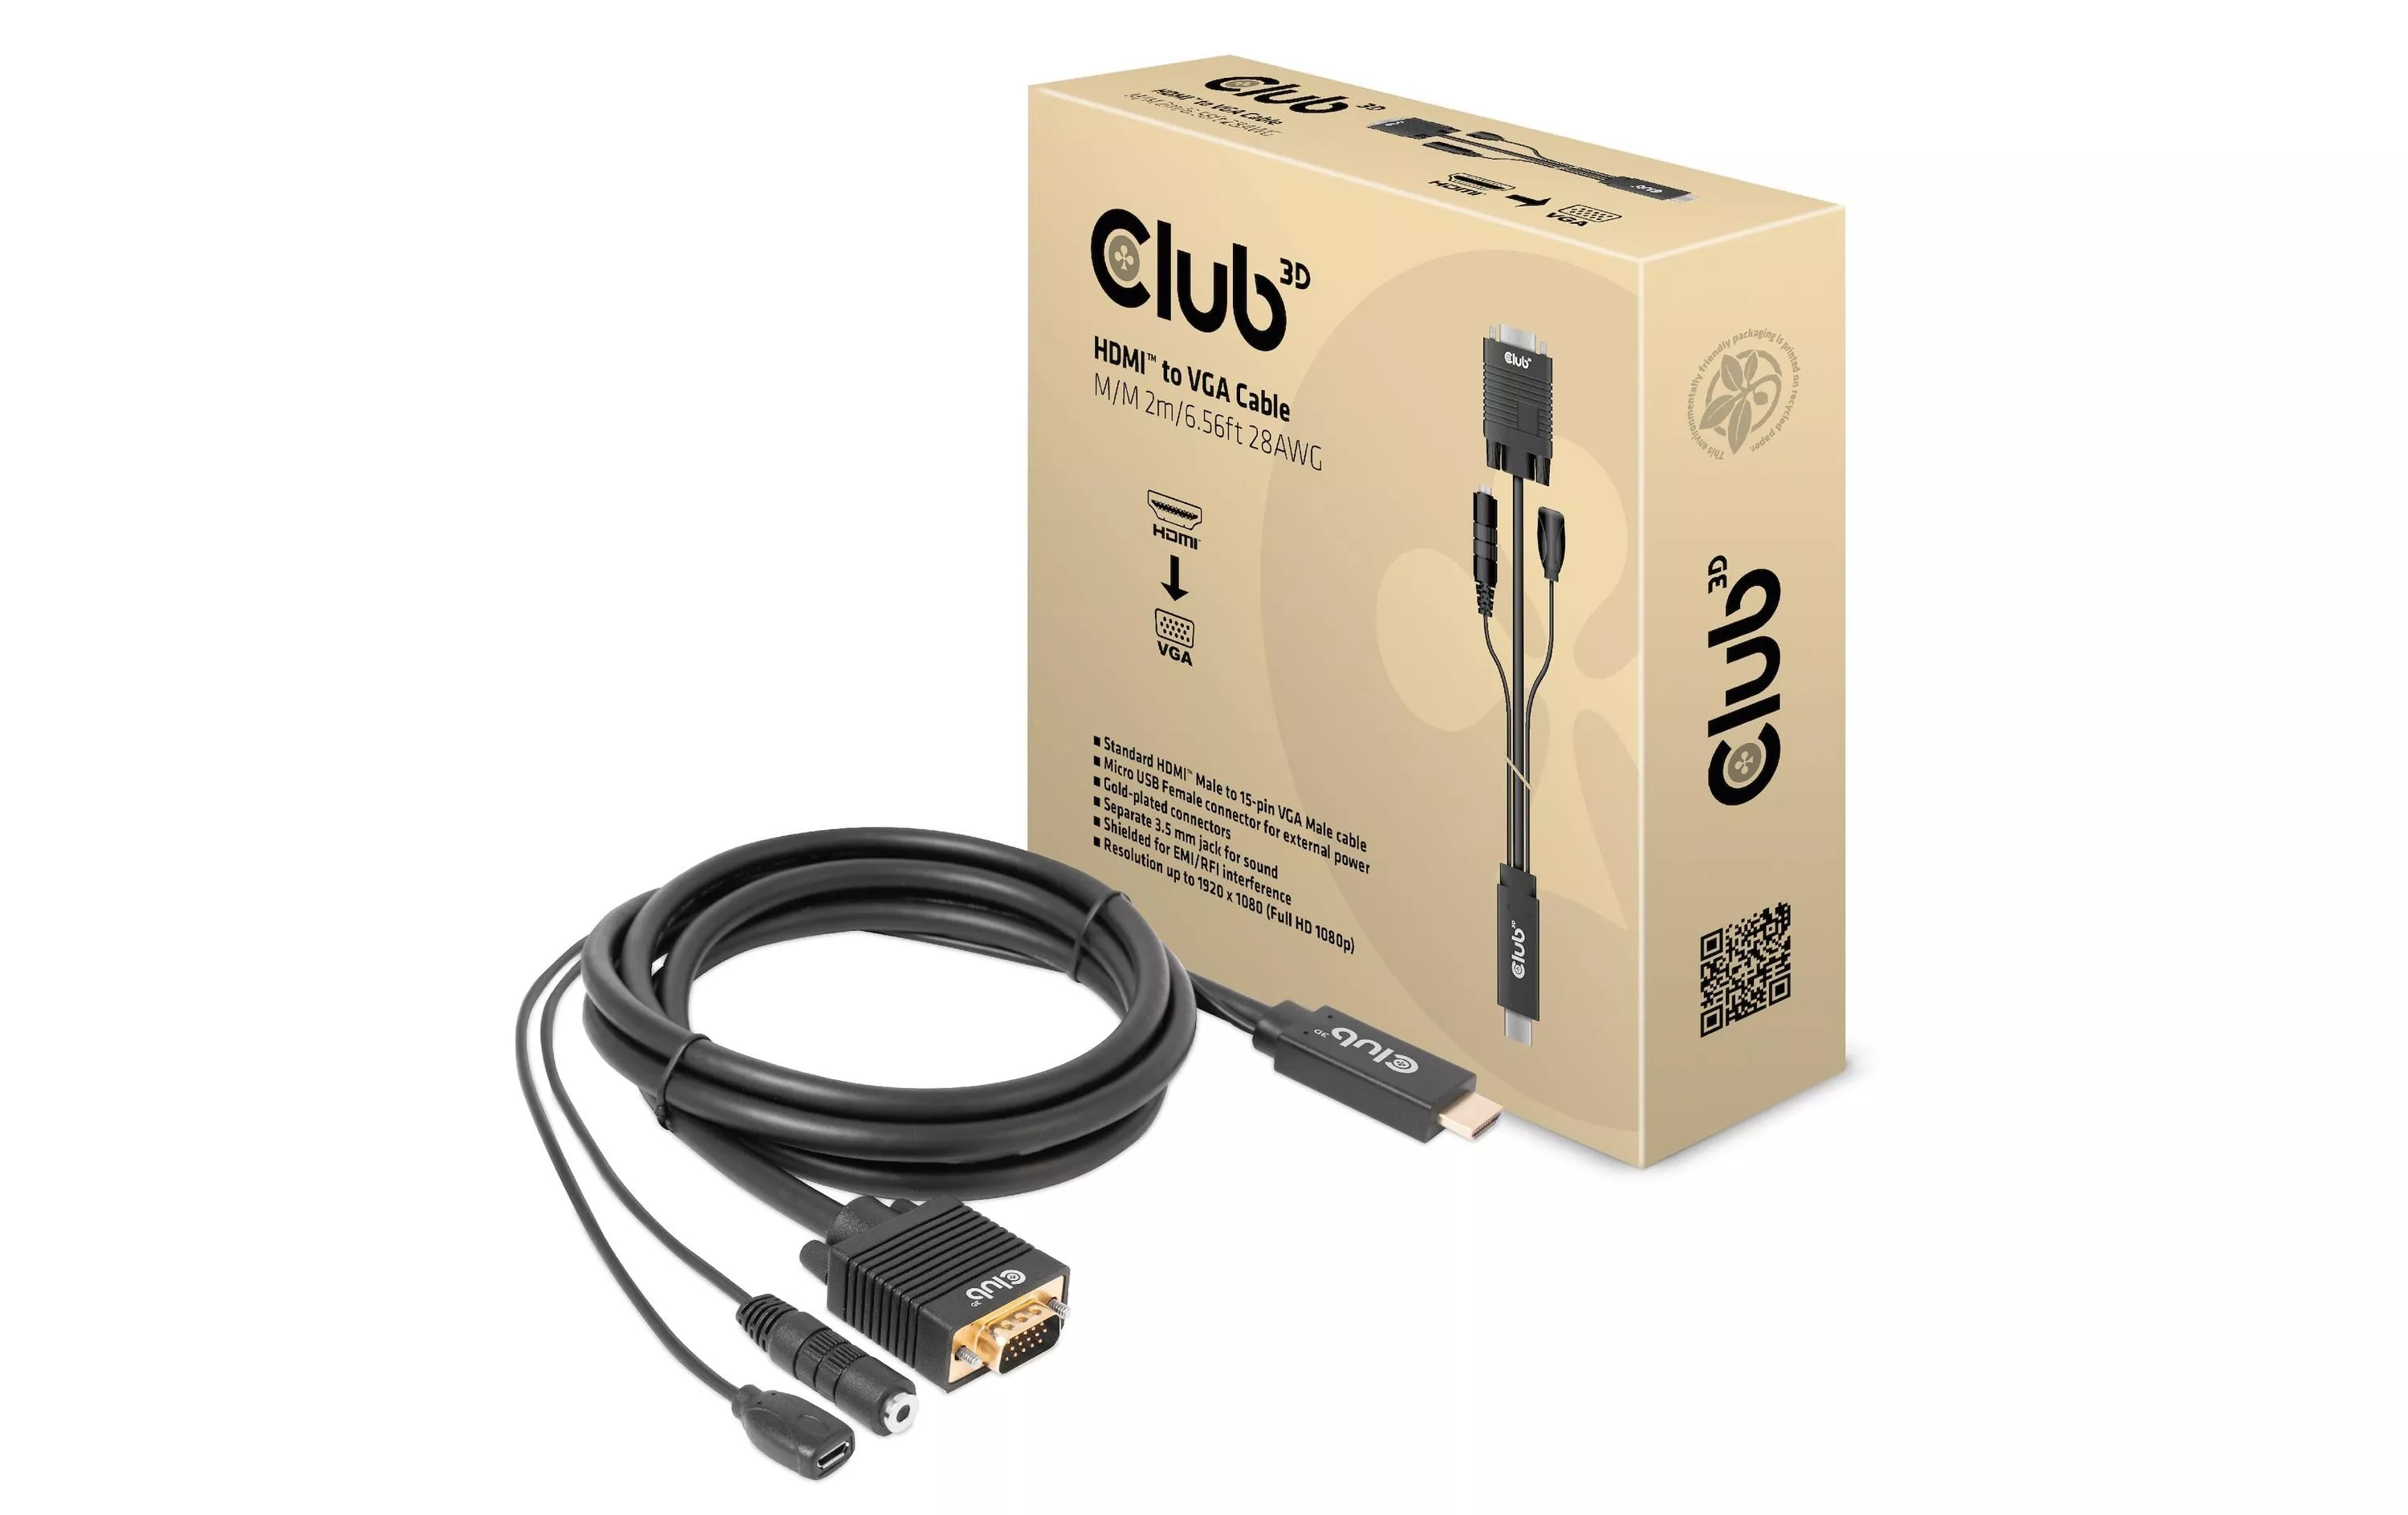 Cavo Club 3D CAC-1712 HDMI - VGA, 2 m